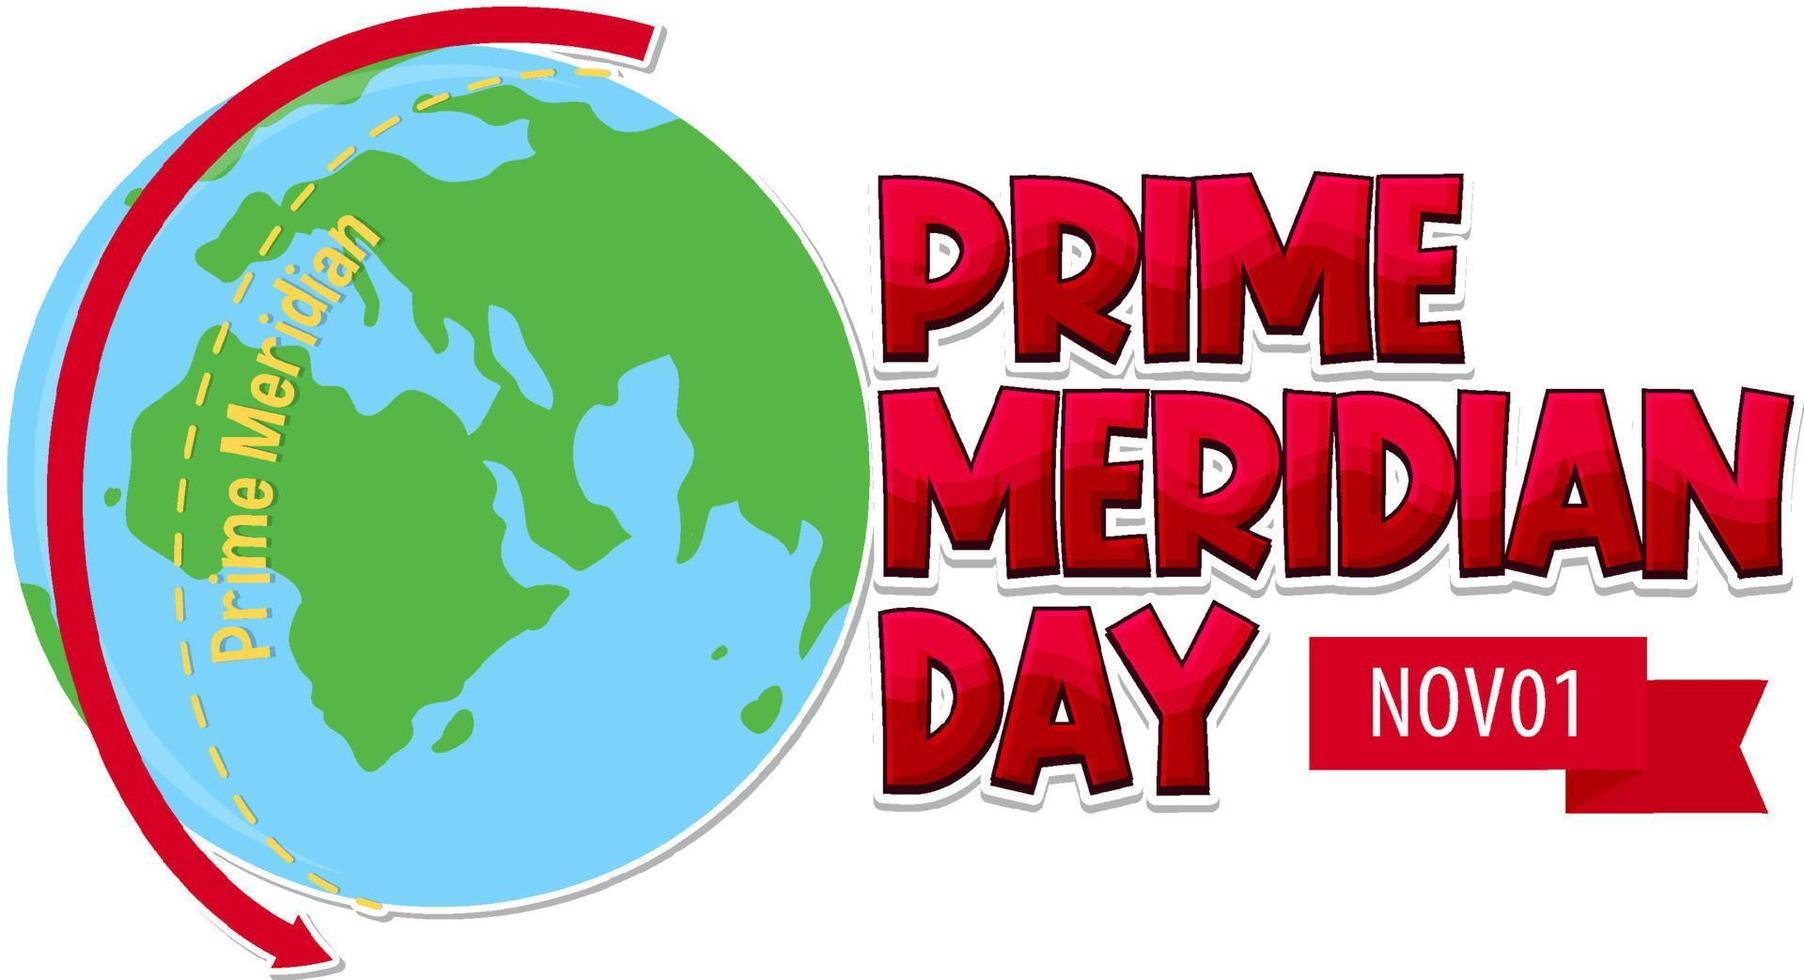 Prime Meridian Day Logo Concept vector